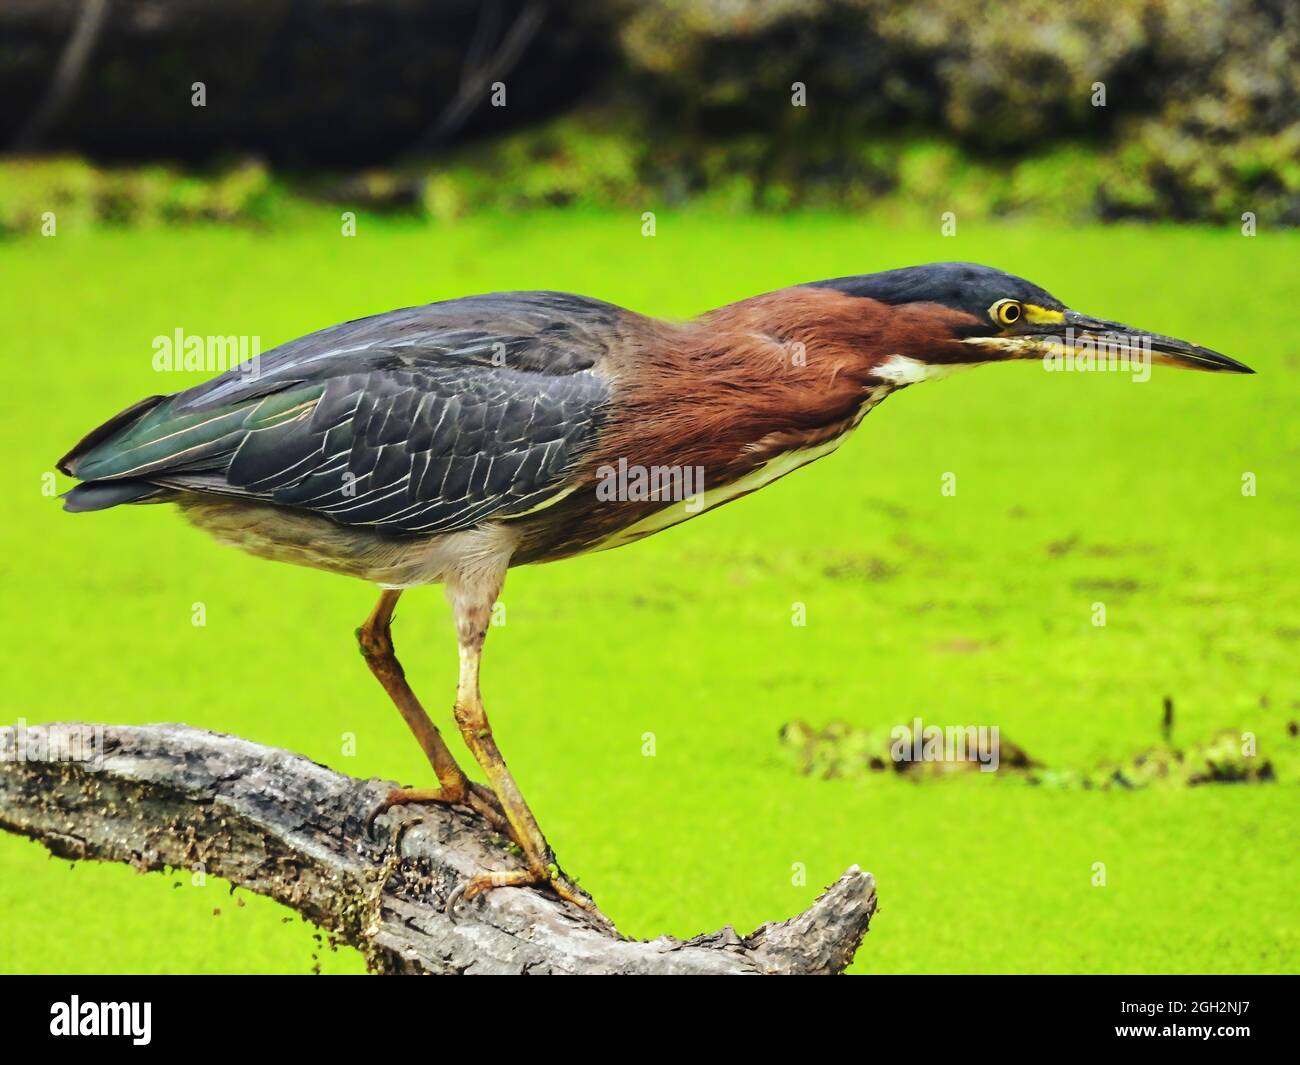 Green Heron Fishing: Ein grüner Reiher Vogel auf einem toten Log thront in einem mit Entenkraut bedeckten Teich Angeln getaucht Stockfoto